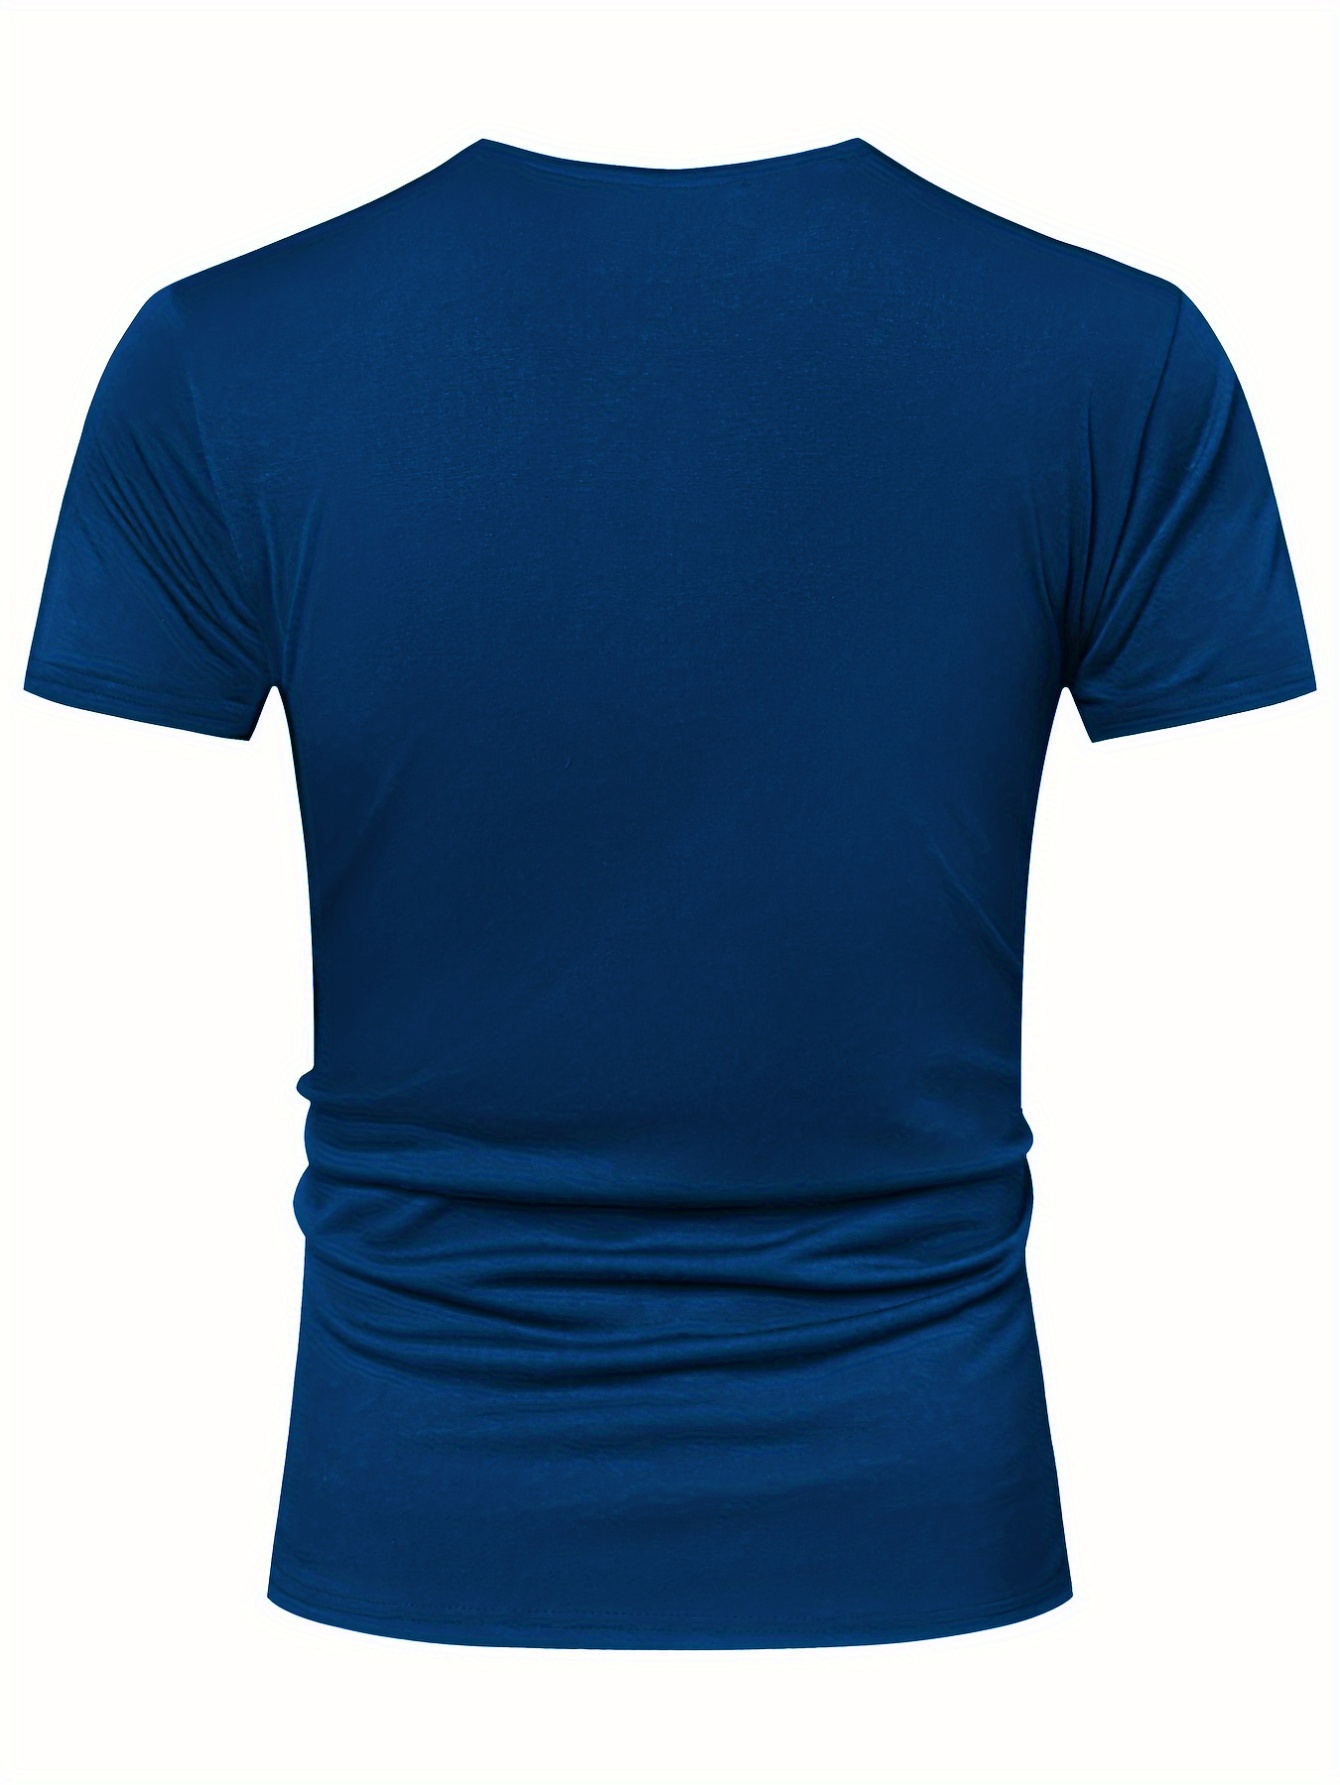 Camisetas para hombre: Cuello redondo, cuello henley y más